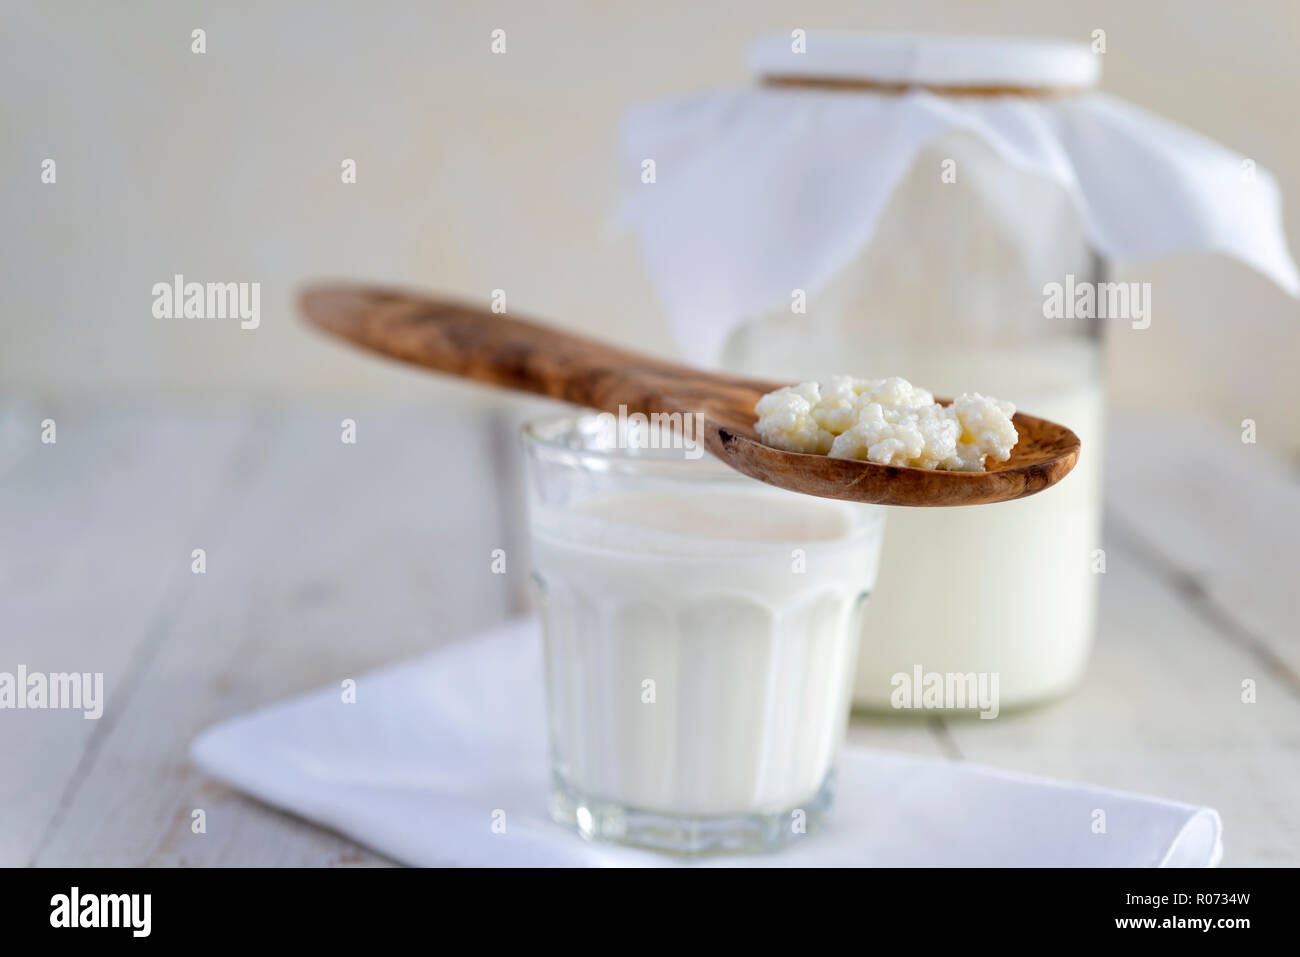 Le kéfir de lait fait maison fait par fermentation du lait avec les grains de kéfir. Banque D'Images